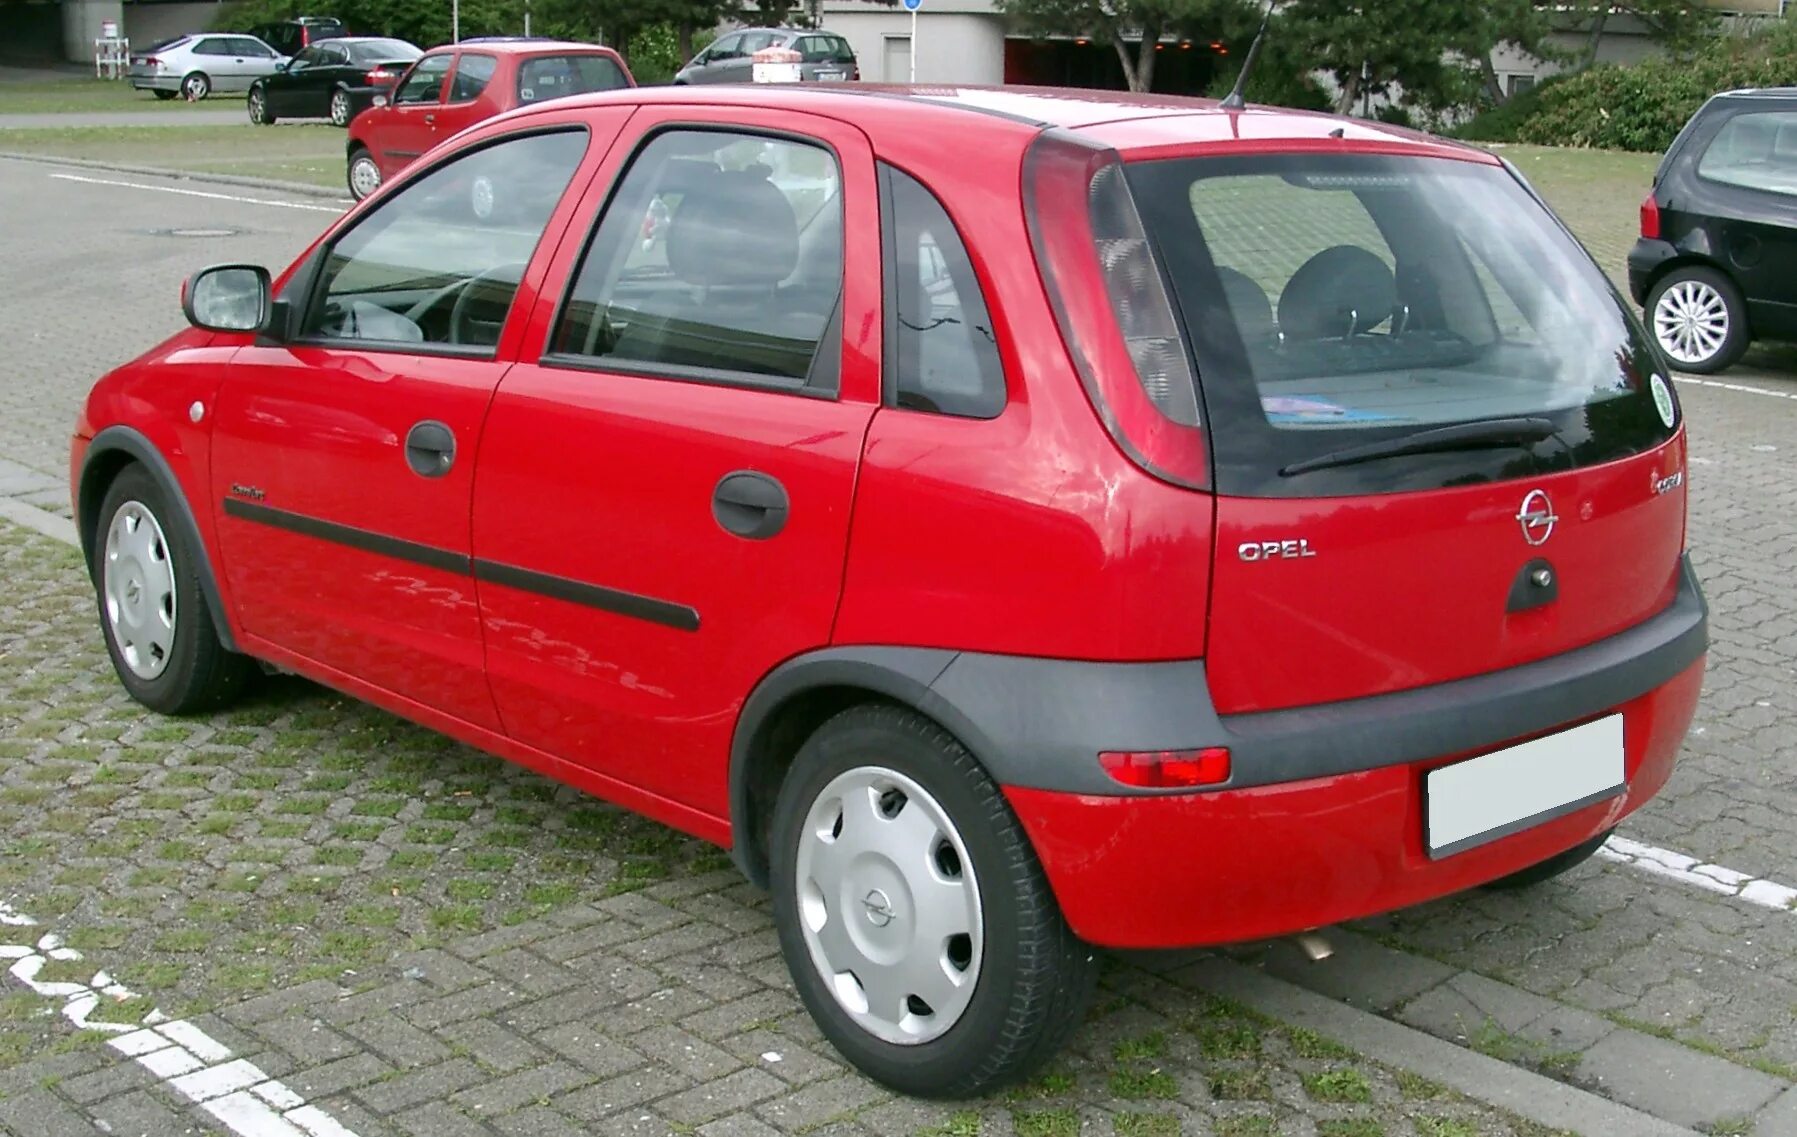 Opel Corsa 2003. Opel Corsa 2002. Opel Corsa 1990. Opel corsa 2004